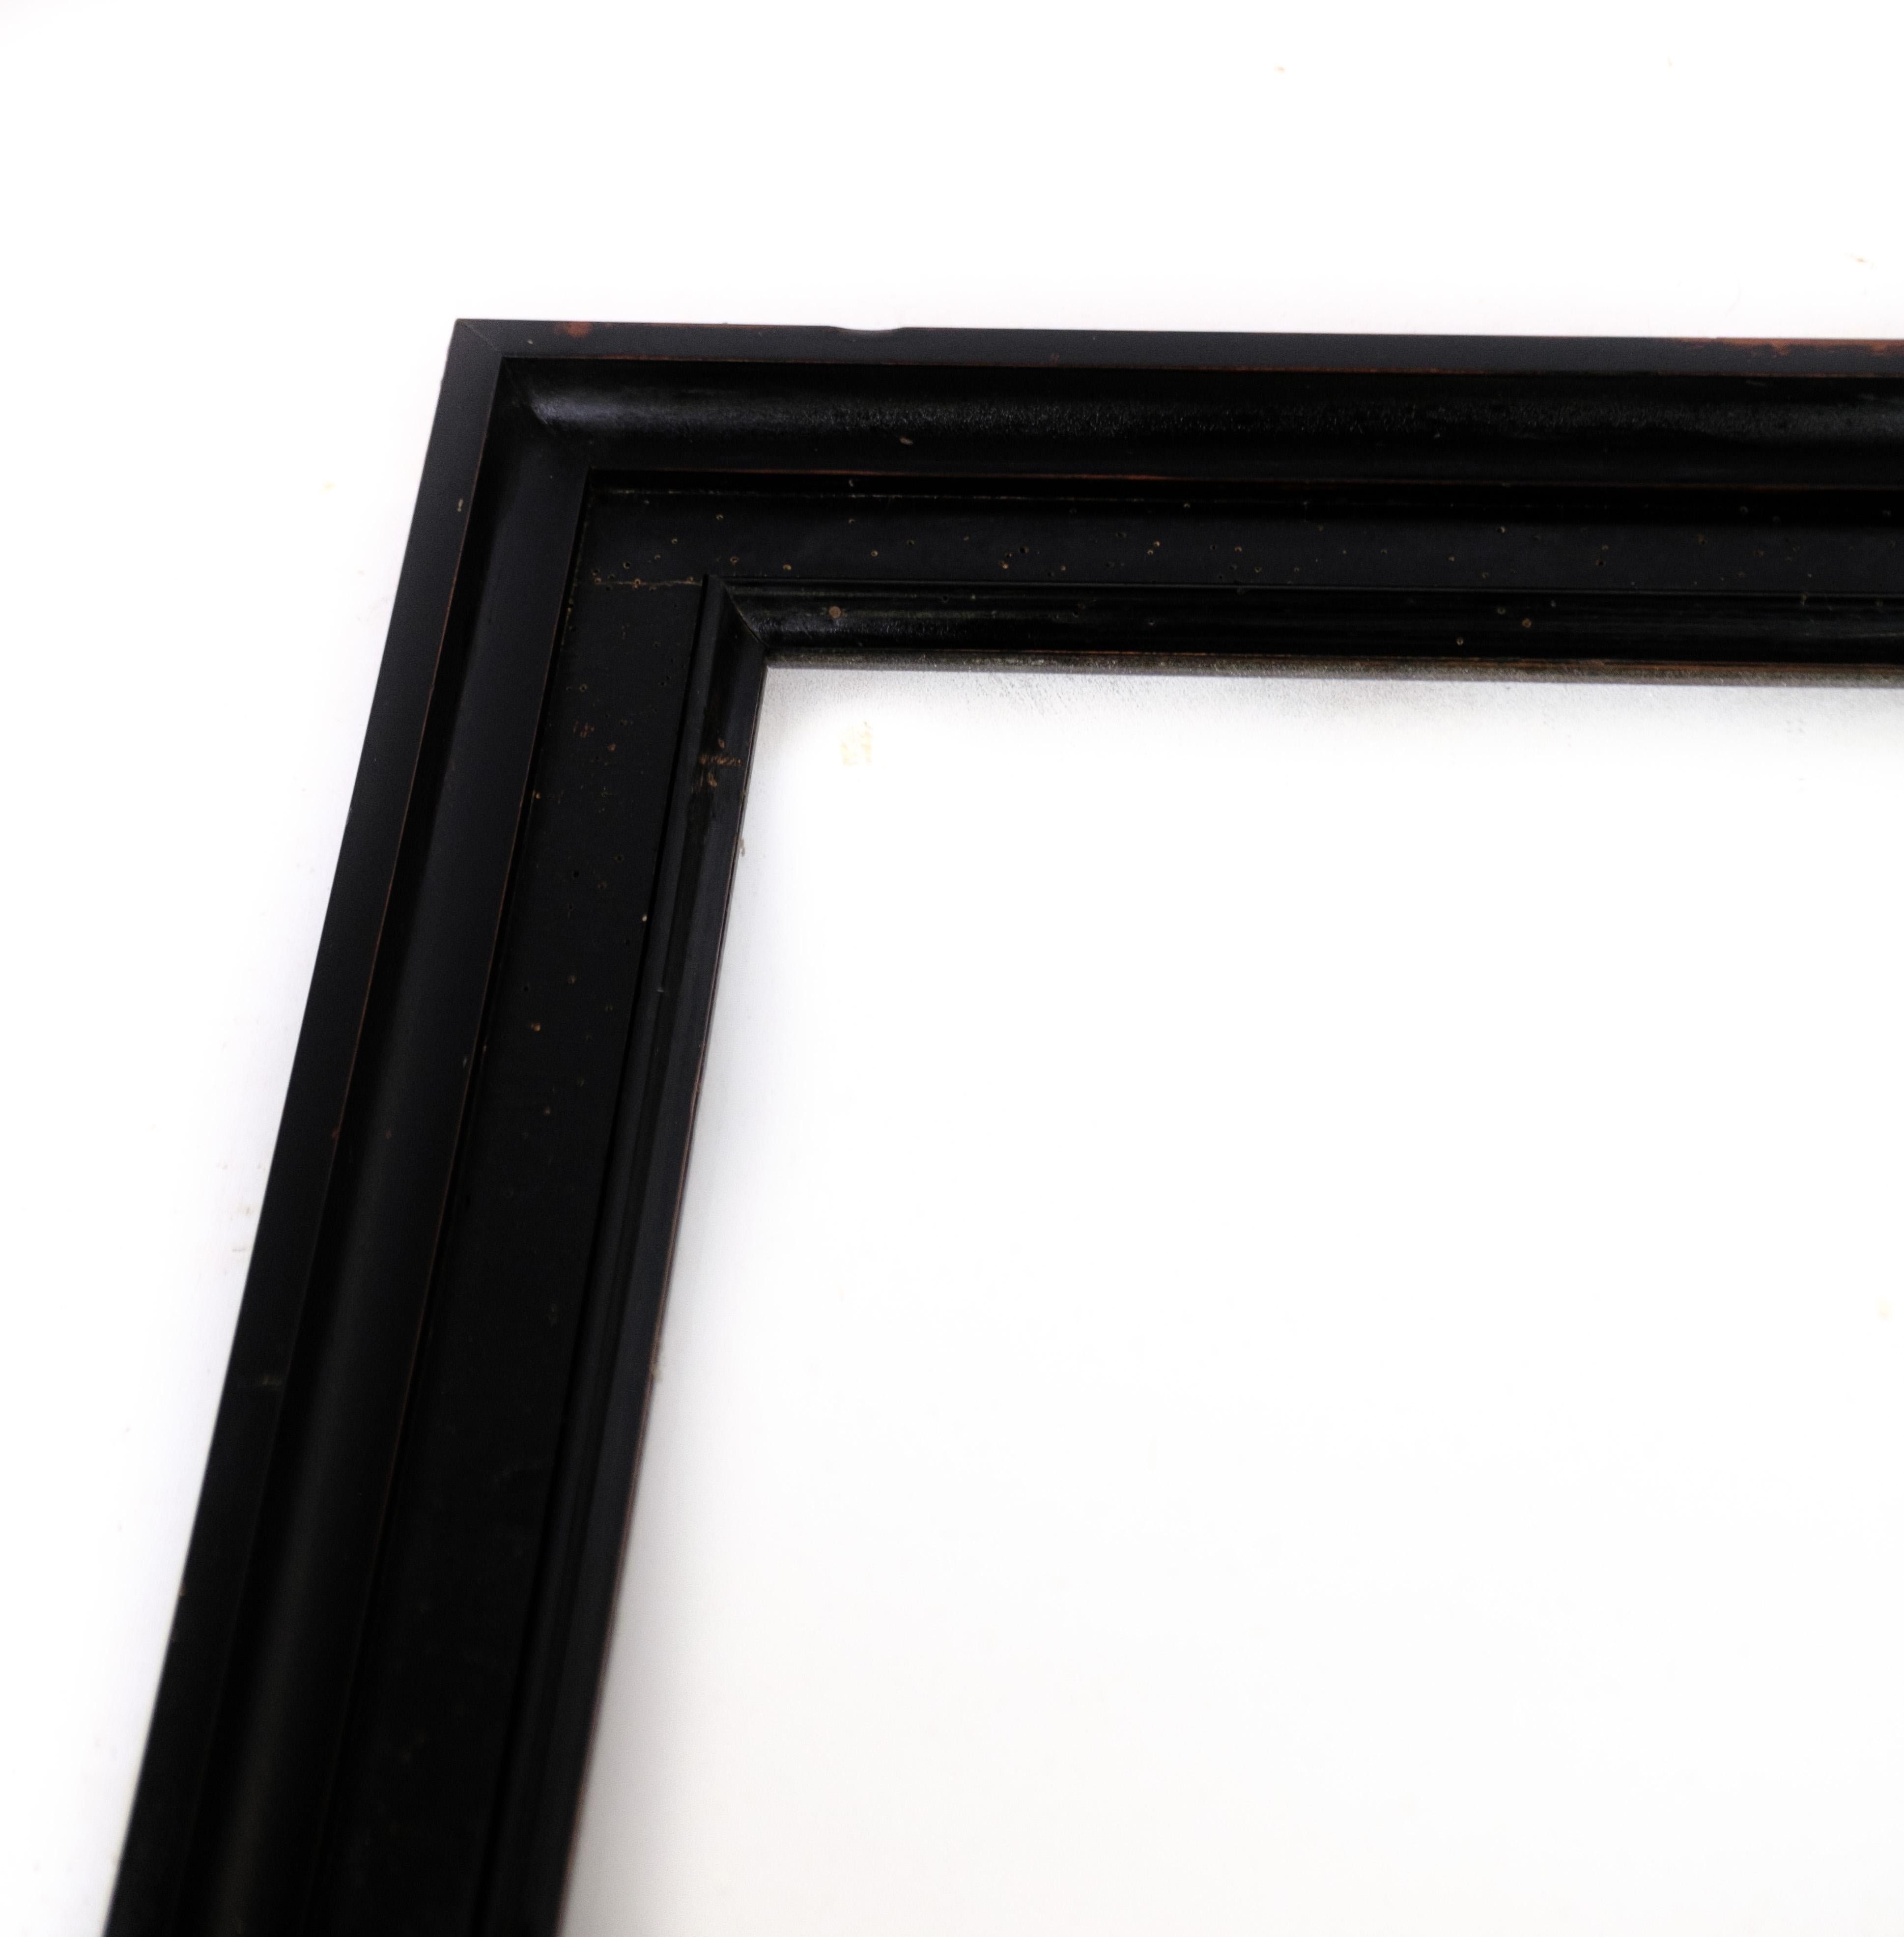 Miroir ancien en bois d'acajou teinté foncé datant des années 1890 environ.
Dimensions en cm : H:153 L:59

Ce produit sera inspecté minutieusement dans notre atelier professionnel par nos employés qualifiés, qui assurent la qualité du produit.